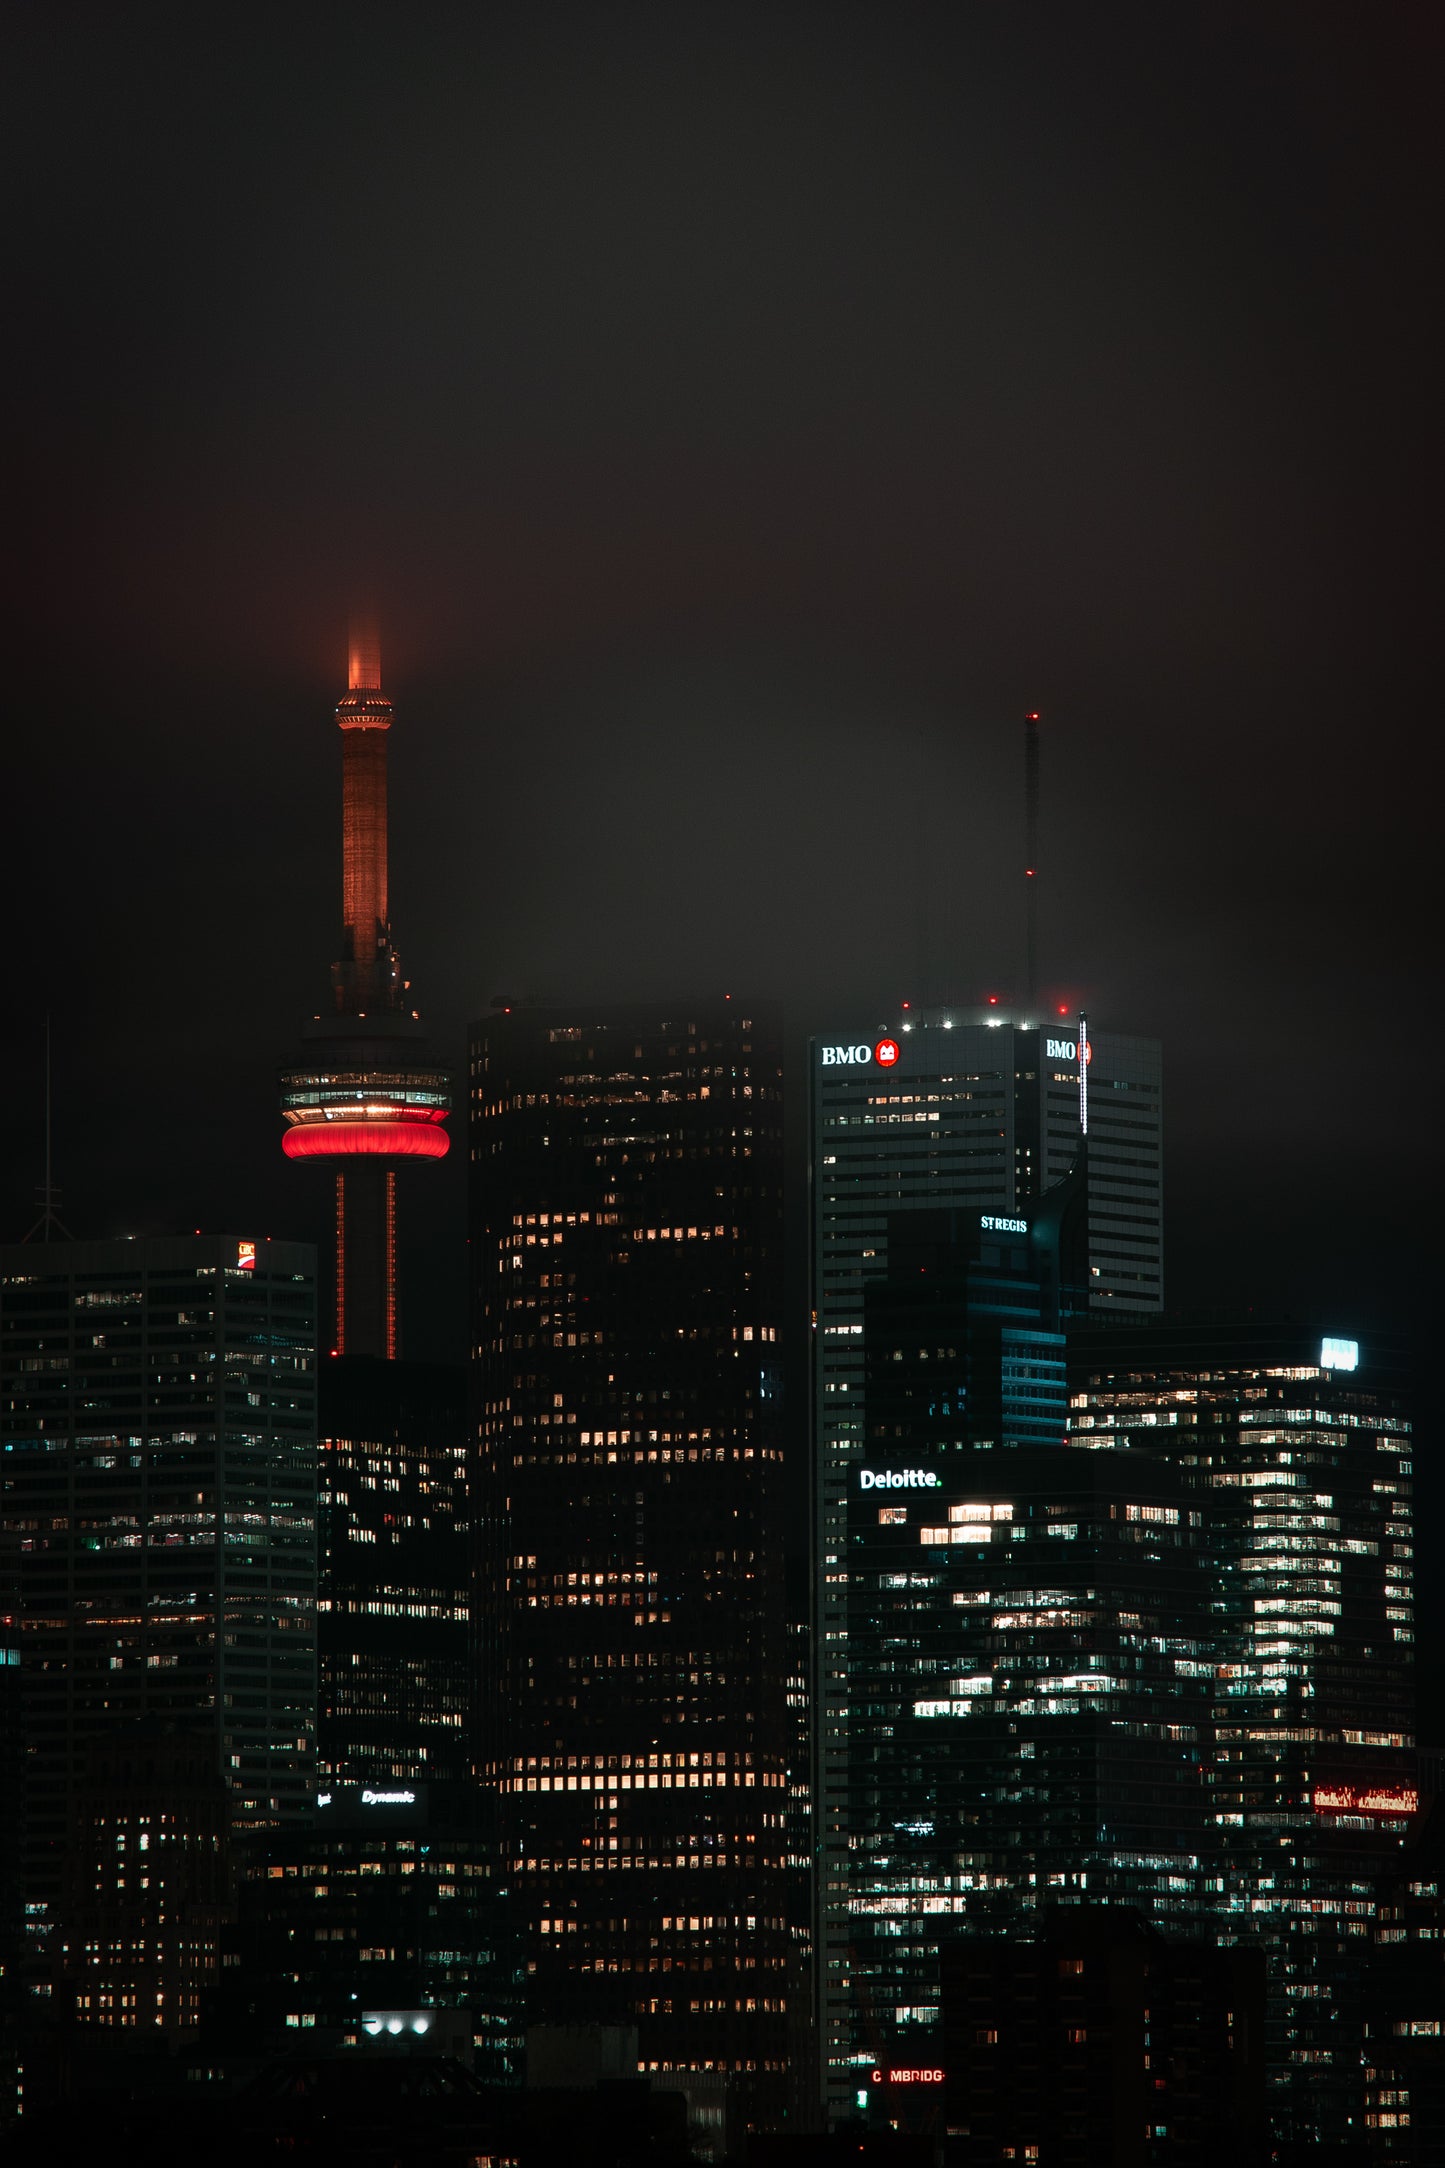 Toronto Skyline At Night